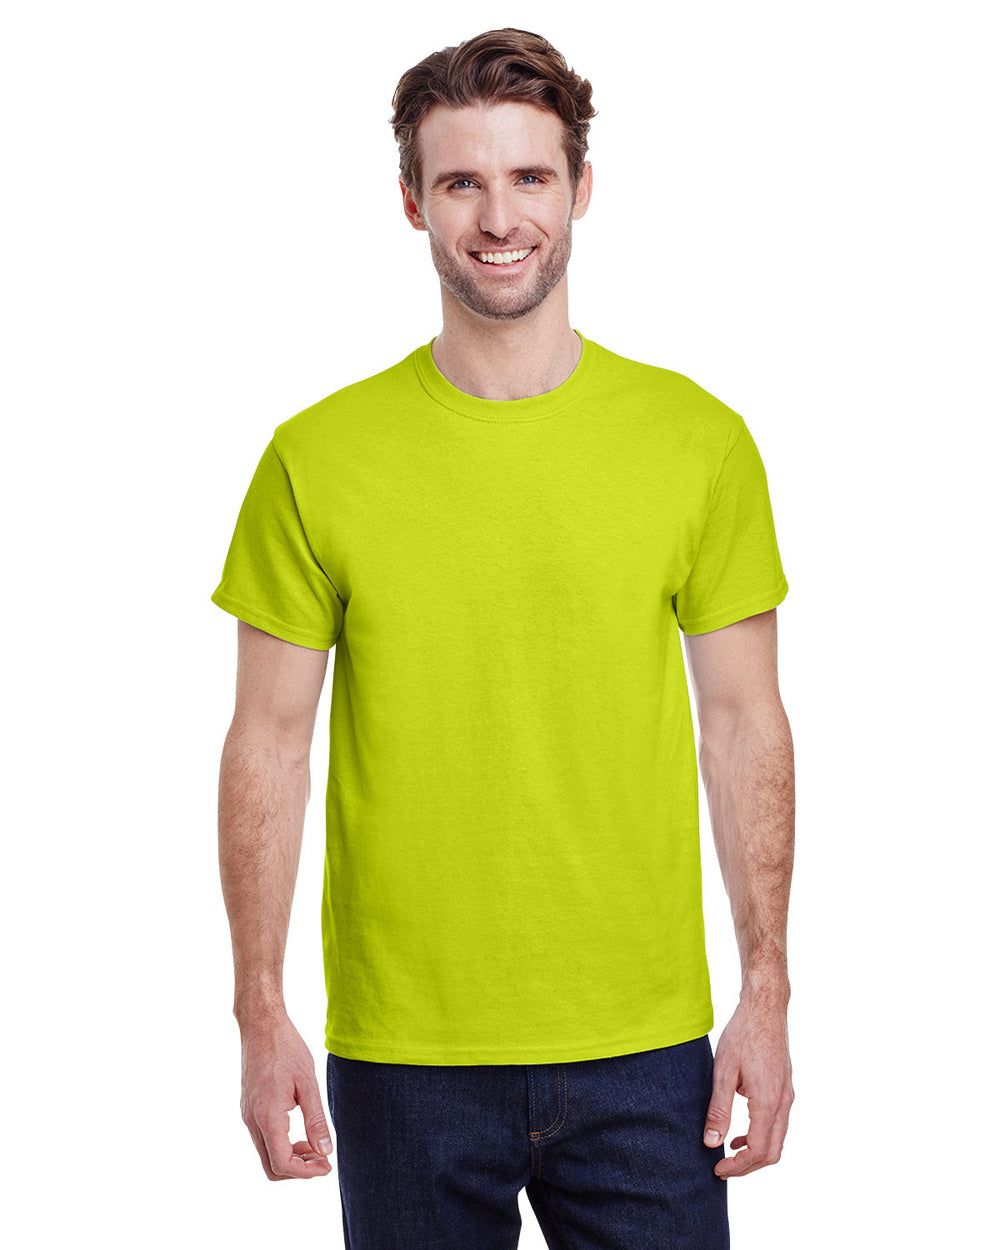 Gildan G200 Adult Ultra Cotton T-Shirt